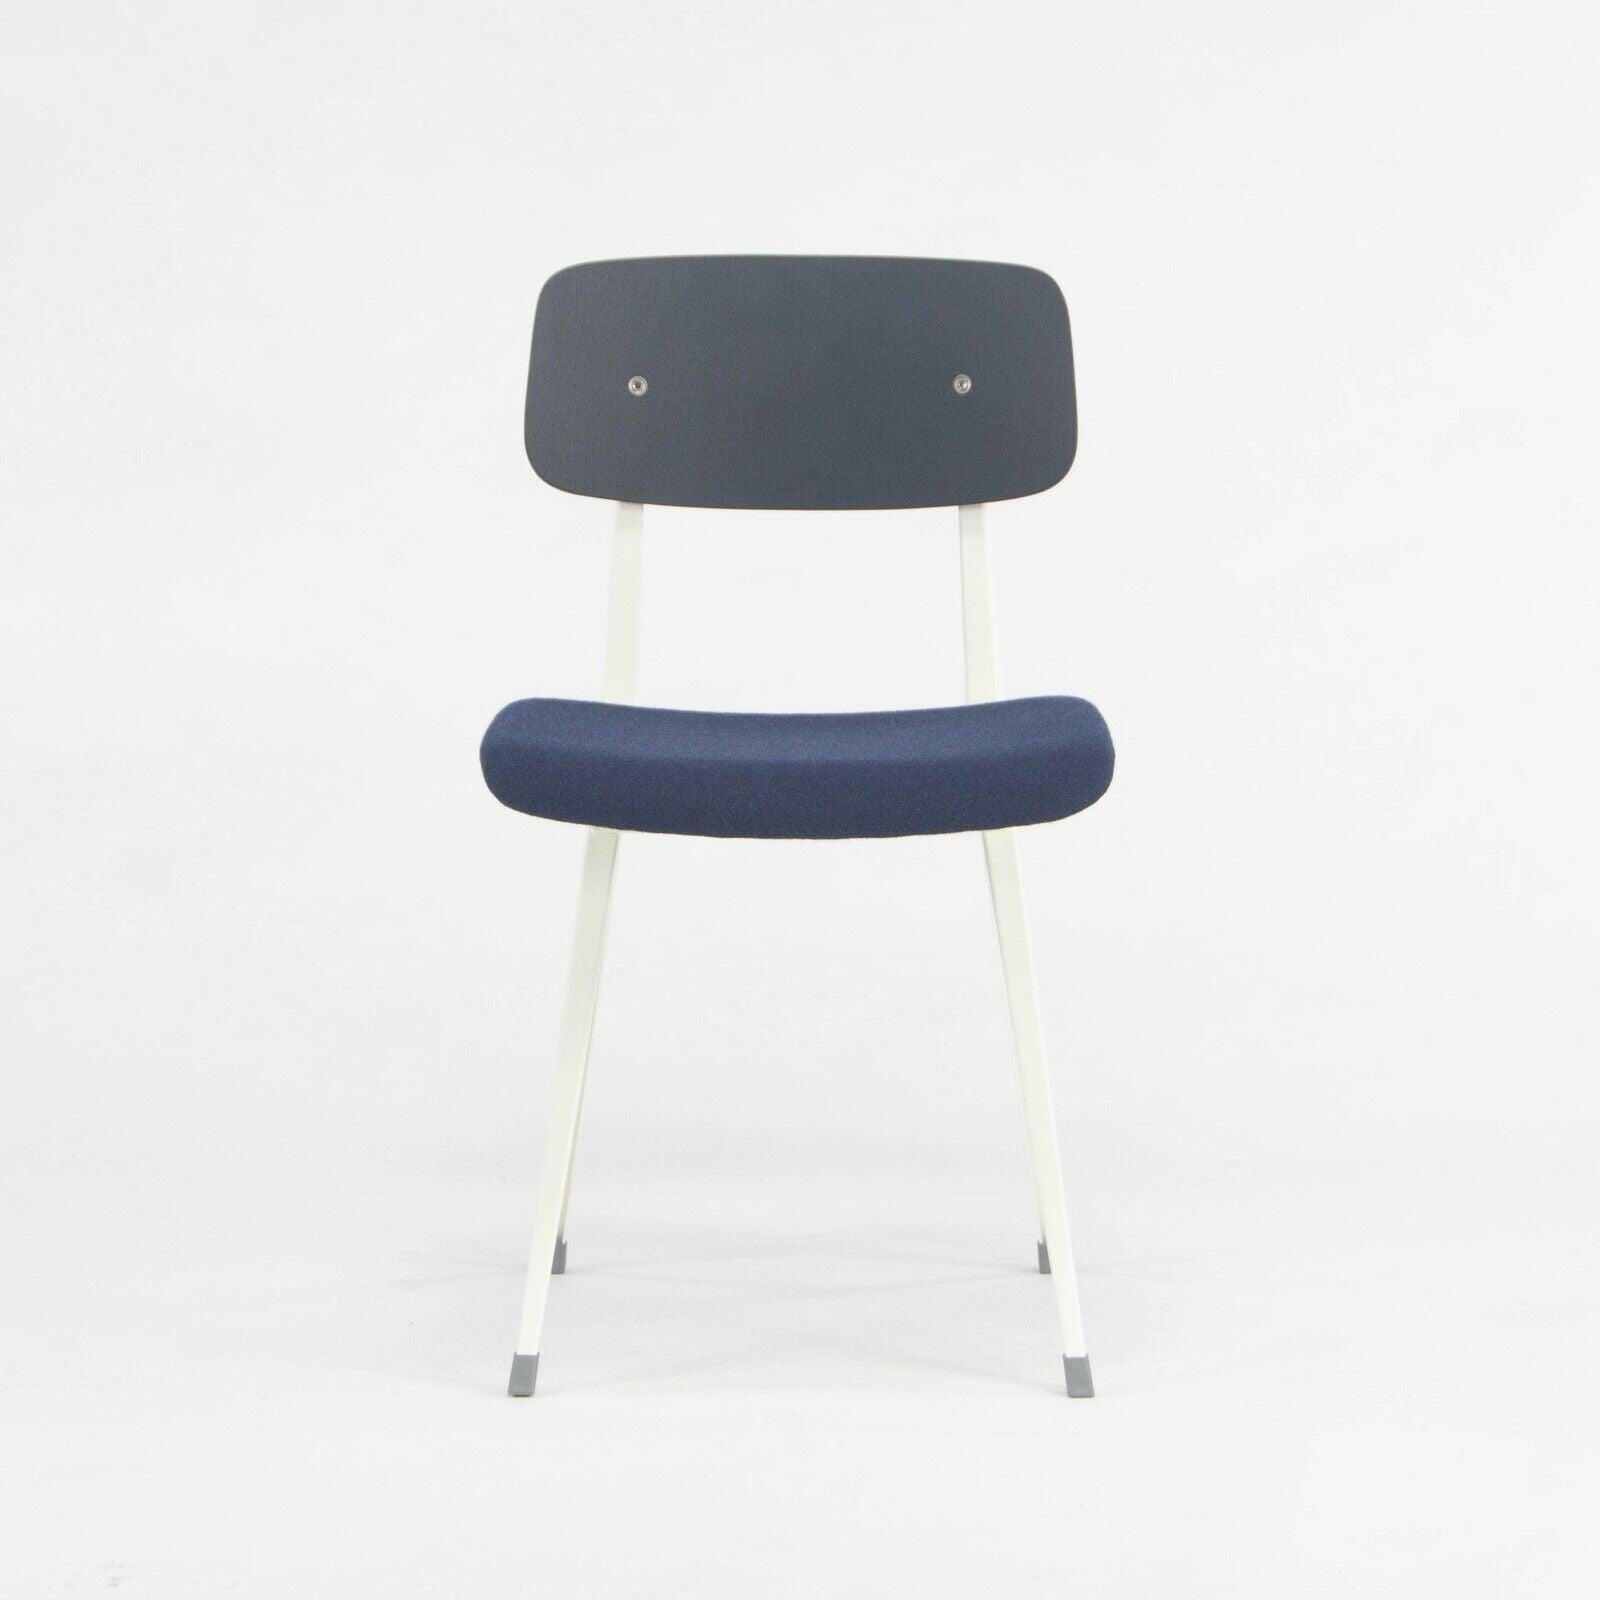 Nous proposons à la vente un ensemble de deux chaises latérales rembourrées Design/One conçues par Kramer et Wim Rietveld et produites par HAY. Ces chaises ont été spécifiées en acier thermolaqué blanc avec un dossier en chêne teinté noir et un